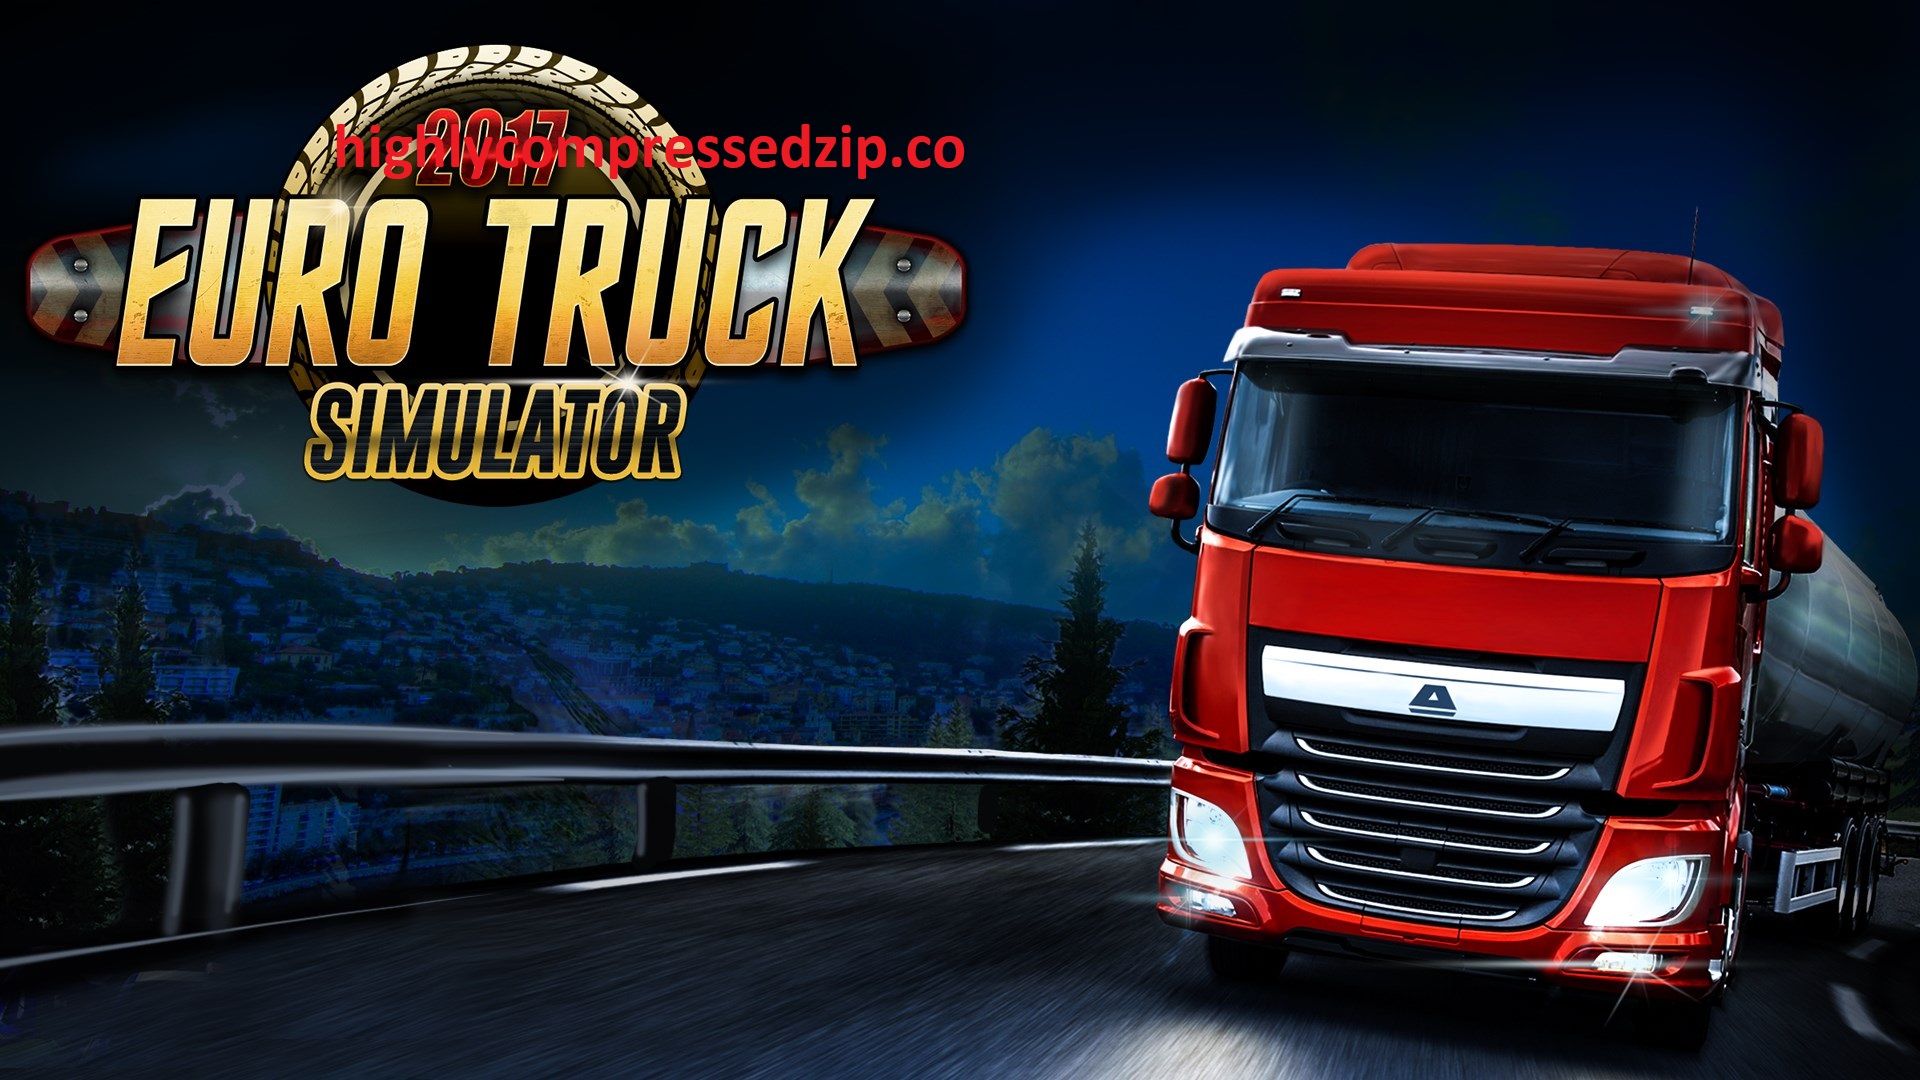 euro truck simulator 2 download reddit mega